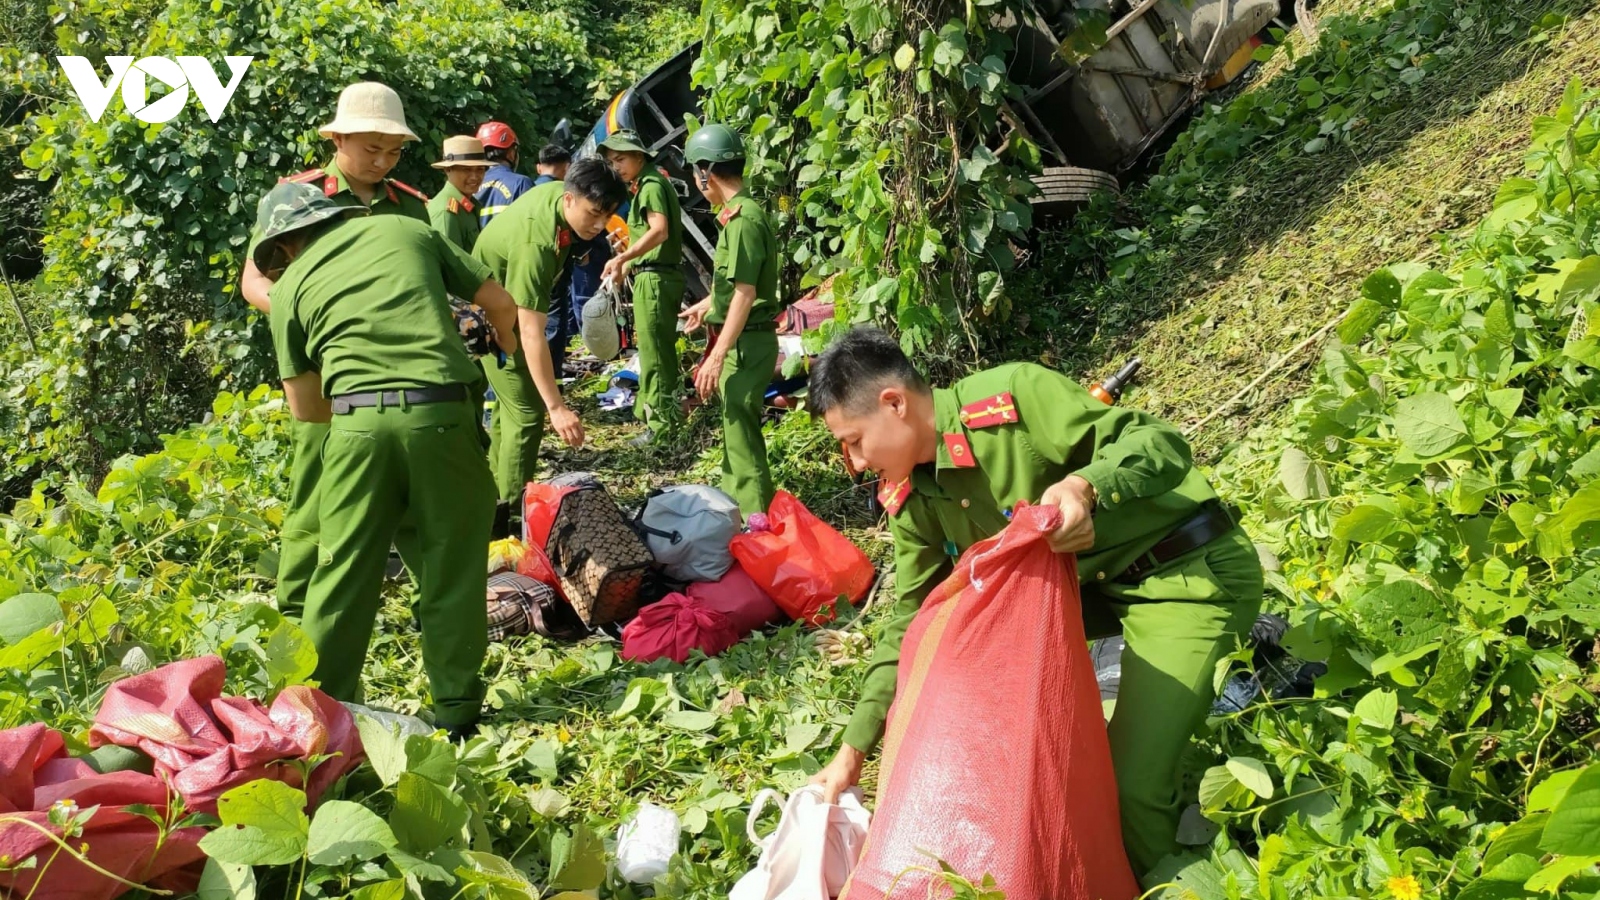 Vụ xe khách lật trên đèo Cùi Chỏ ở Đắk Nông: Tài xế thiếu chú ý quan sát